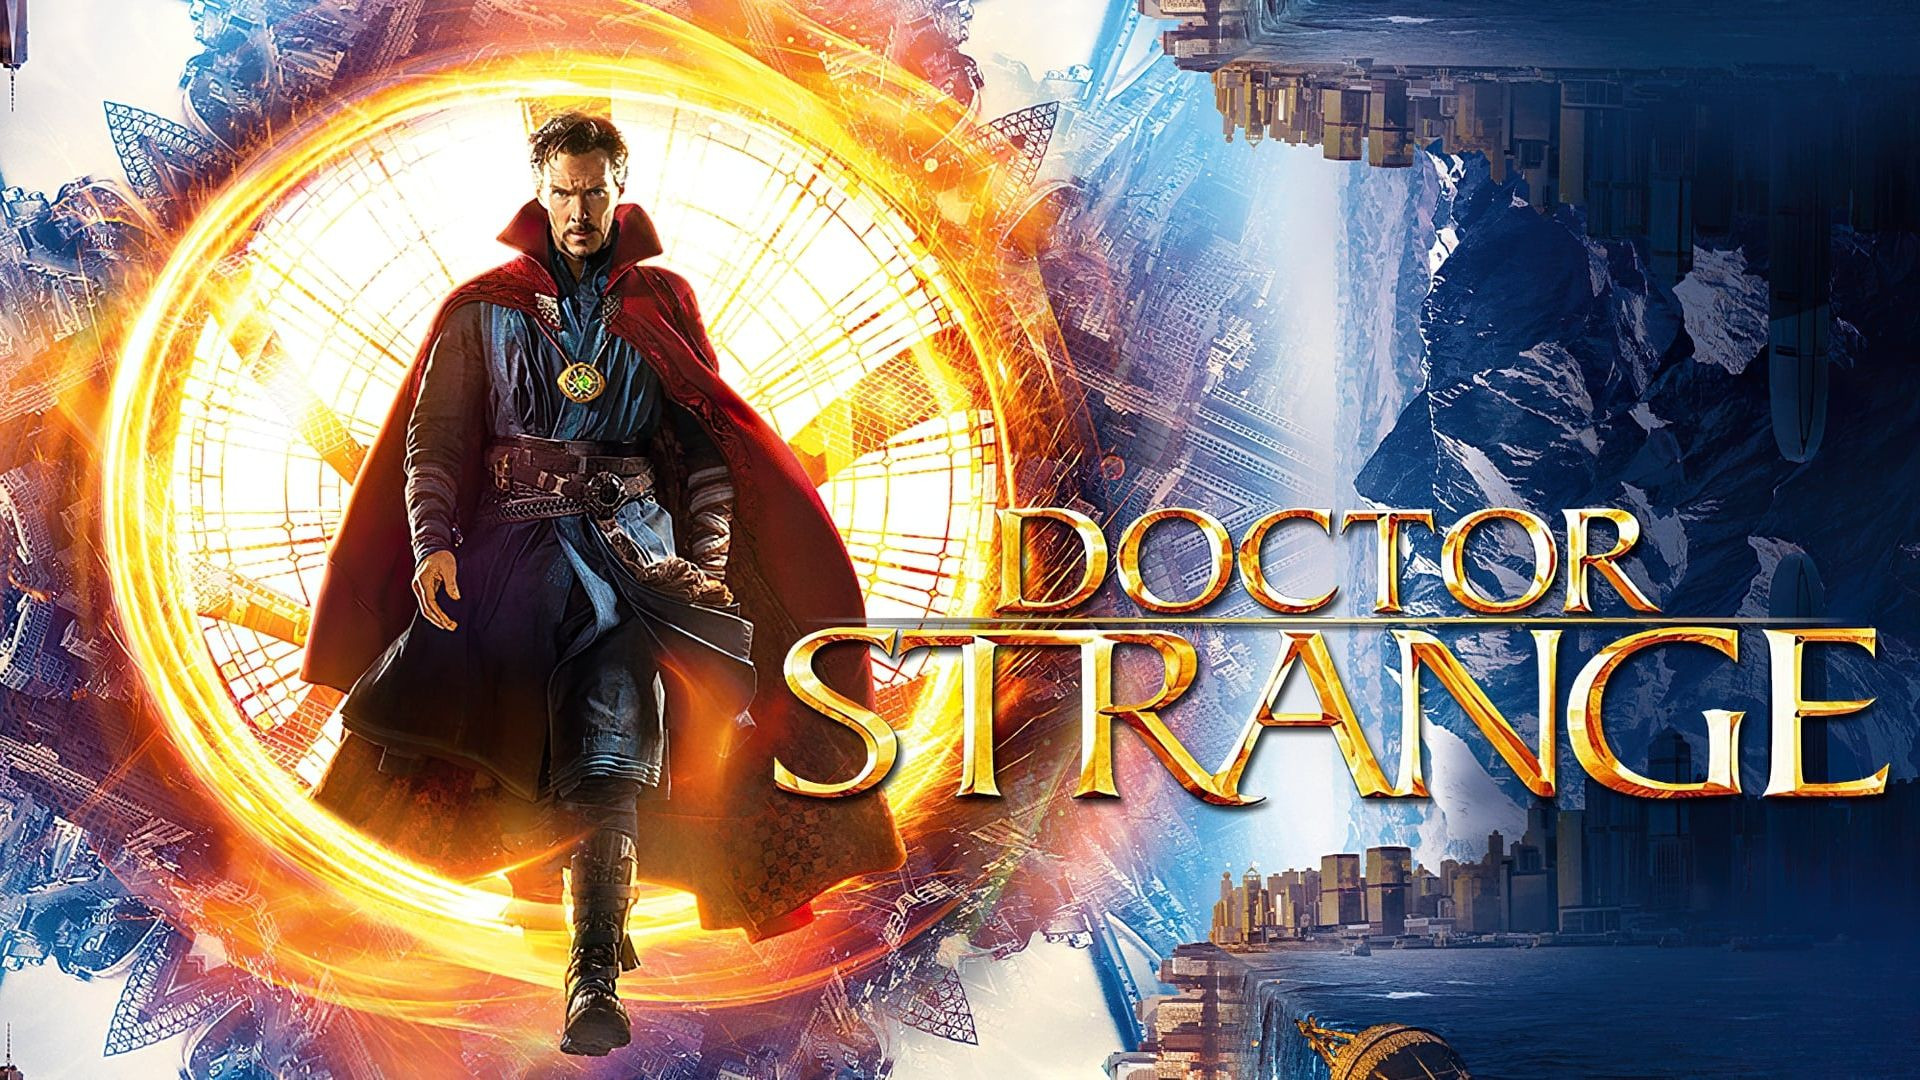 TRAILER Doctor Strange (2016) cas. + Doctor Strange en el Multiverso de la Locura (2022) cas.